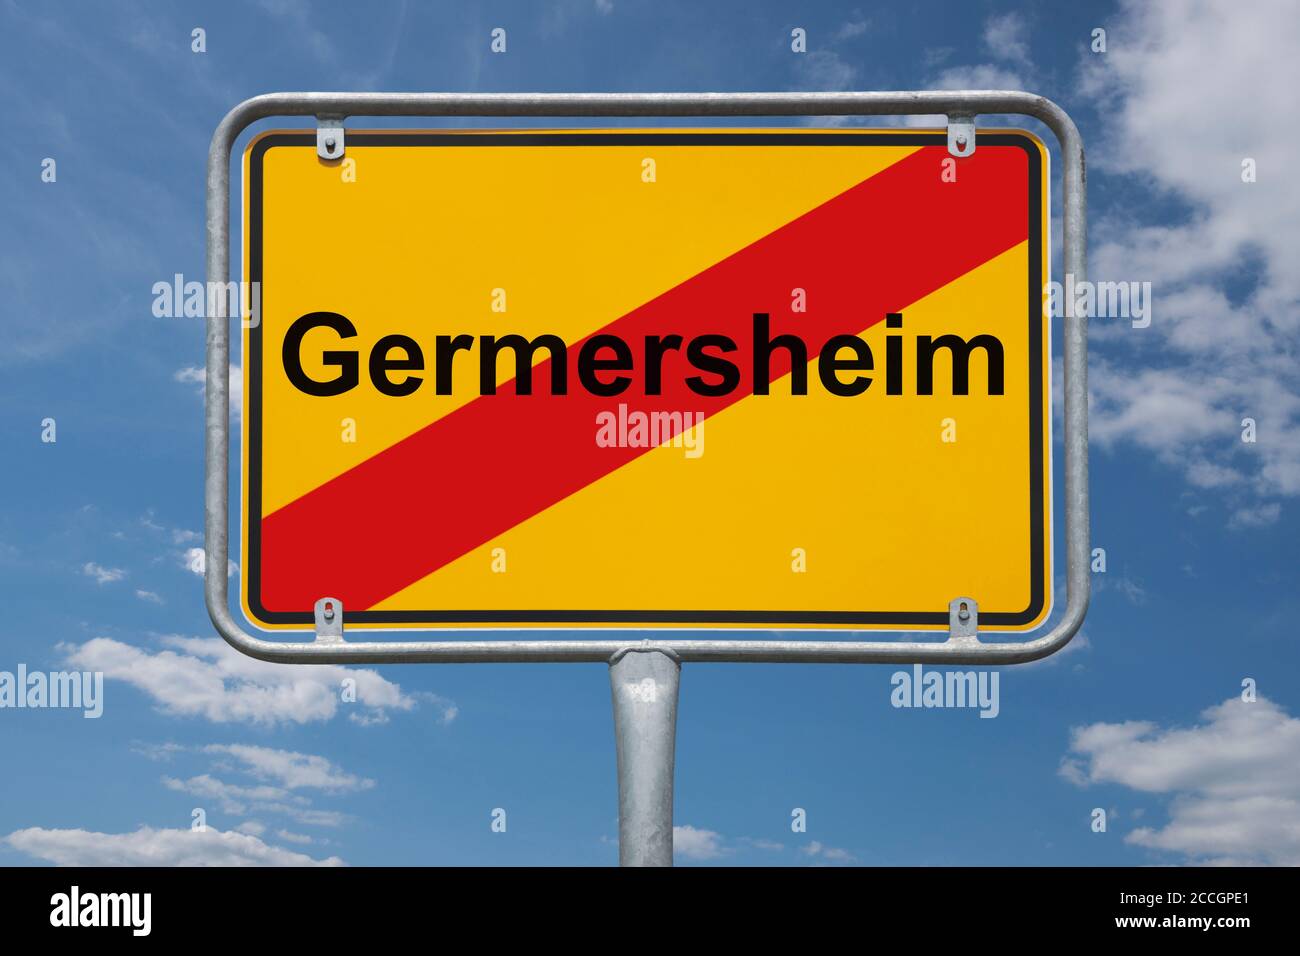 Ortstafel Germersheim, Rheinland-Pfalz, Deutschland | Place name sign Germersheim, Rhineland-Palatinate, Germany, Europe Stock Photo